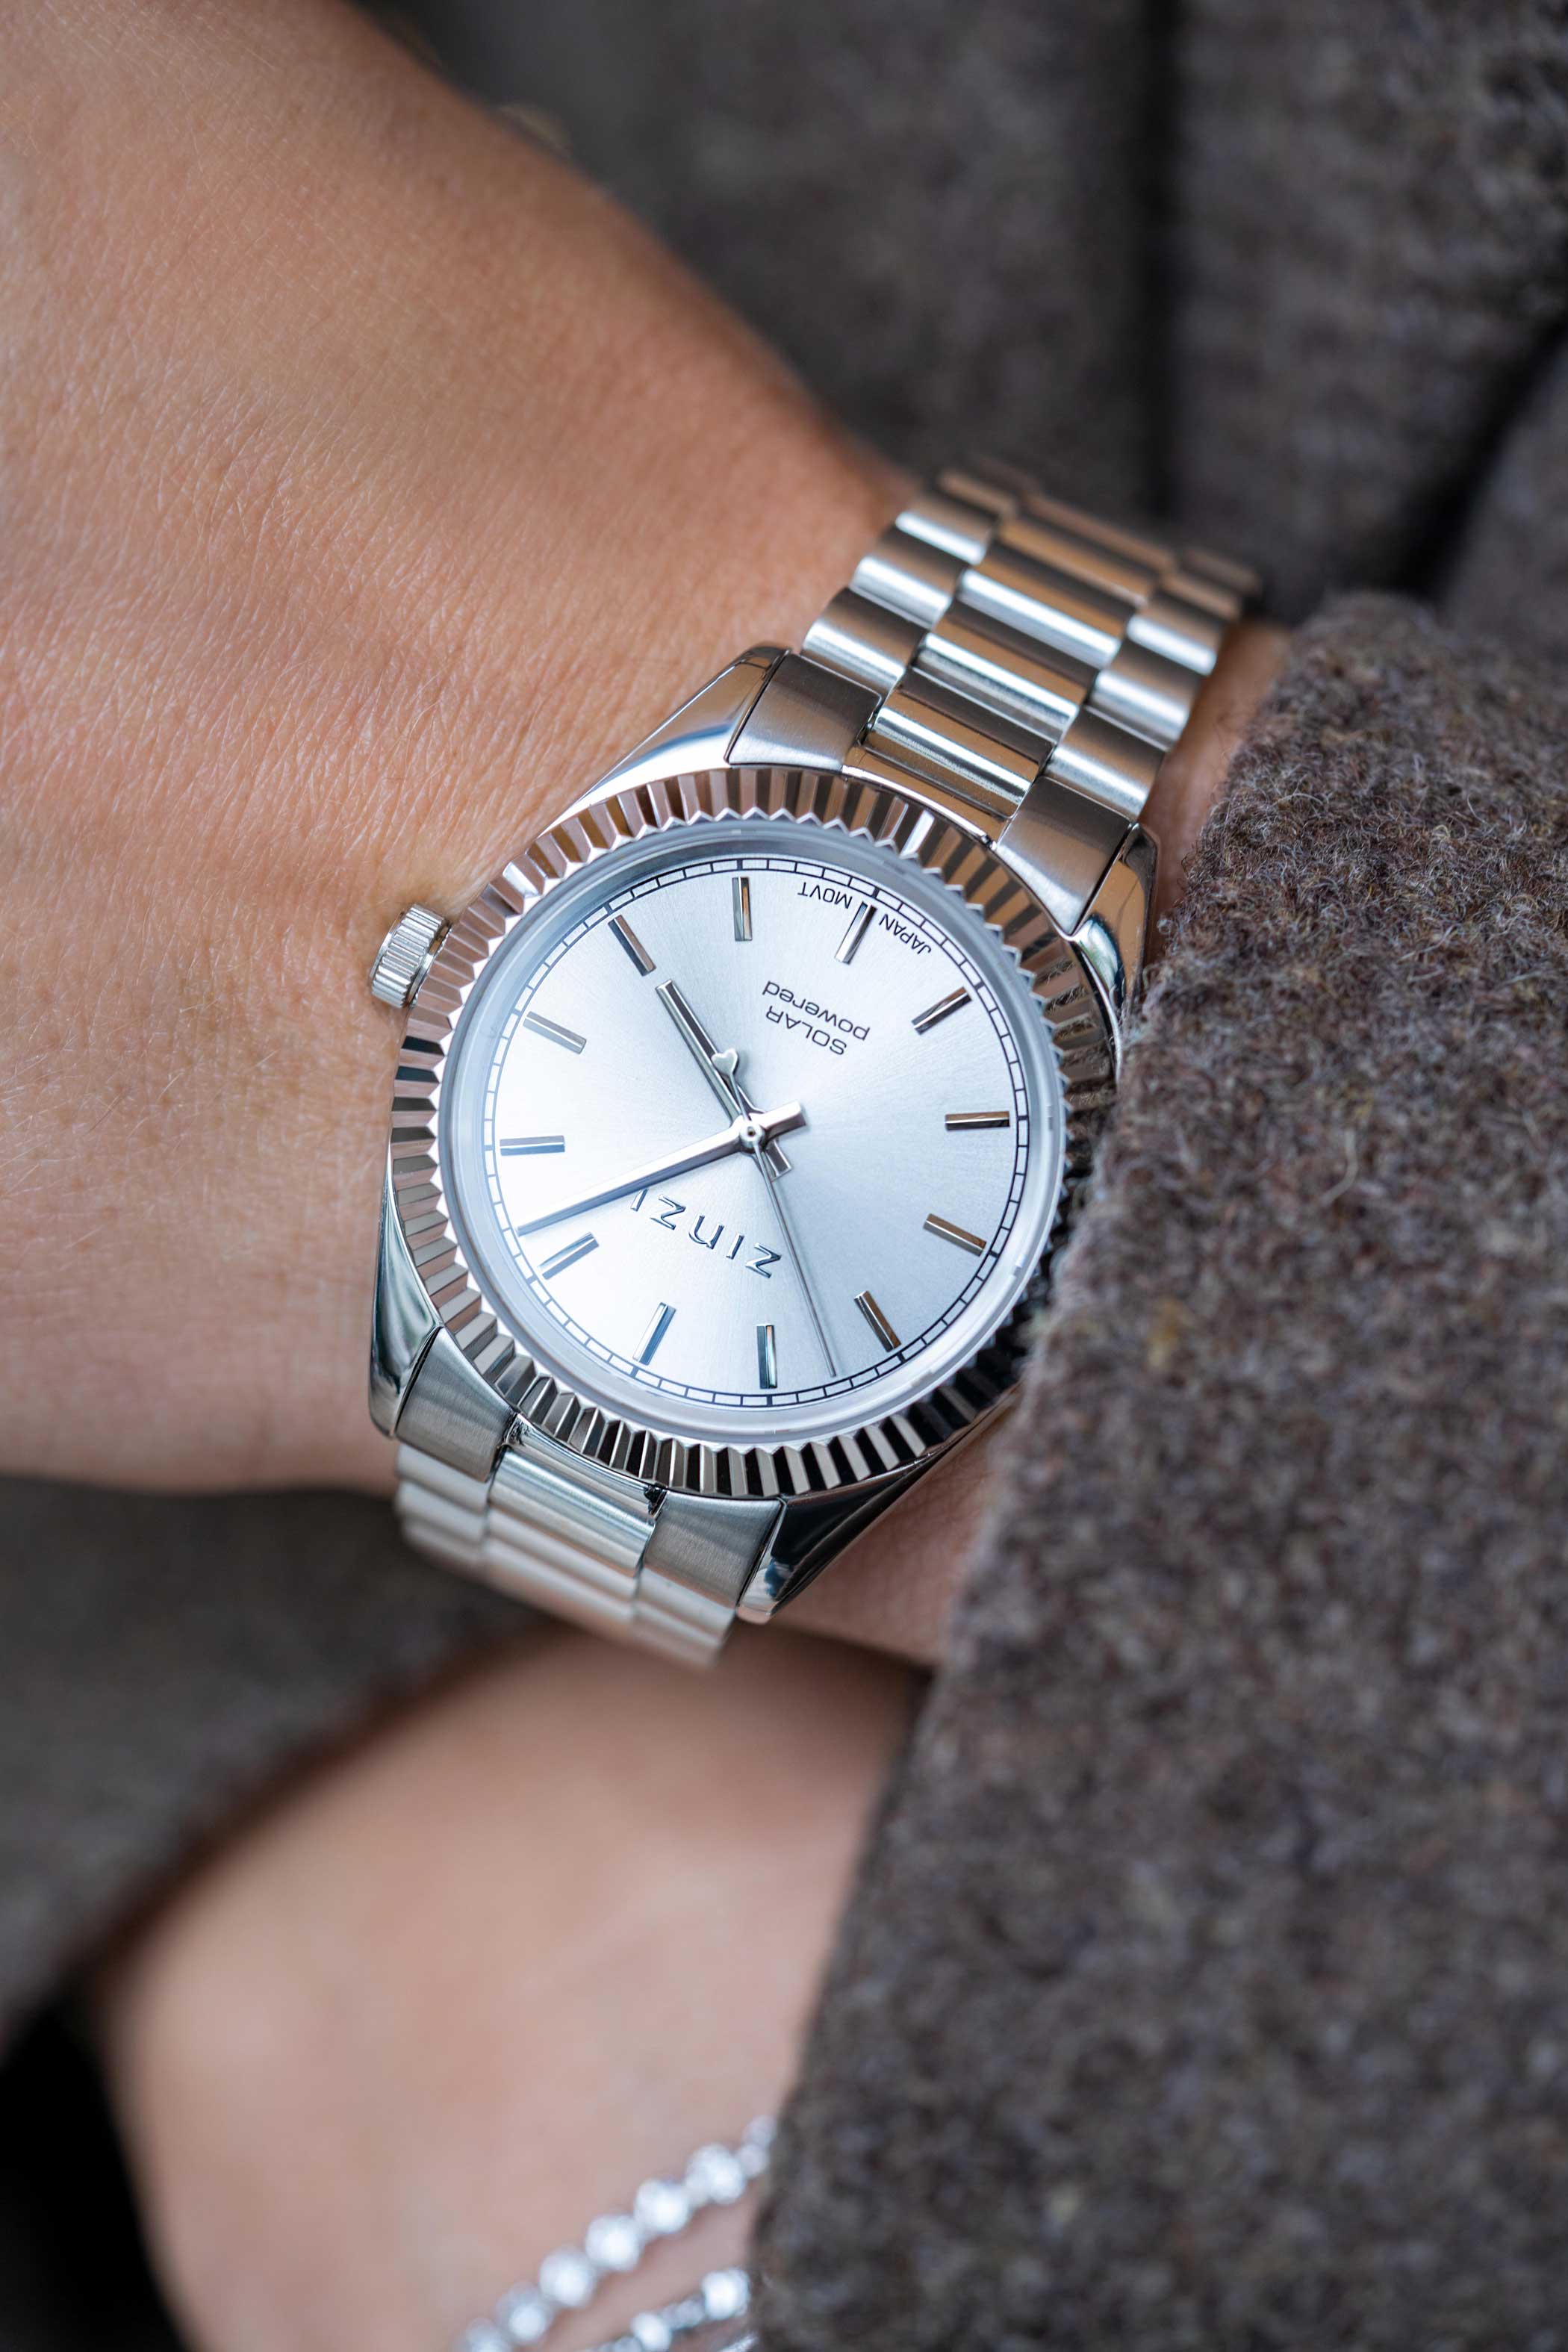 ZINZI Solaris horloge met zilverkleurige wijzerplaat, stalen kast 35mm en stalen band met clip-sluiting. Het Japanse uurwerk loopt op zon- en kunstlicht ZIW2102
